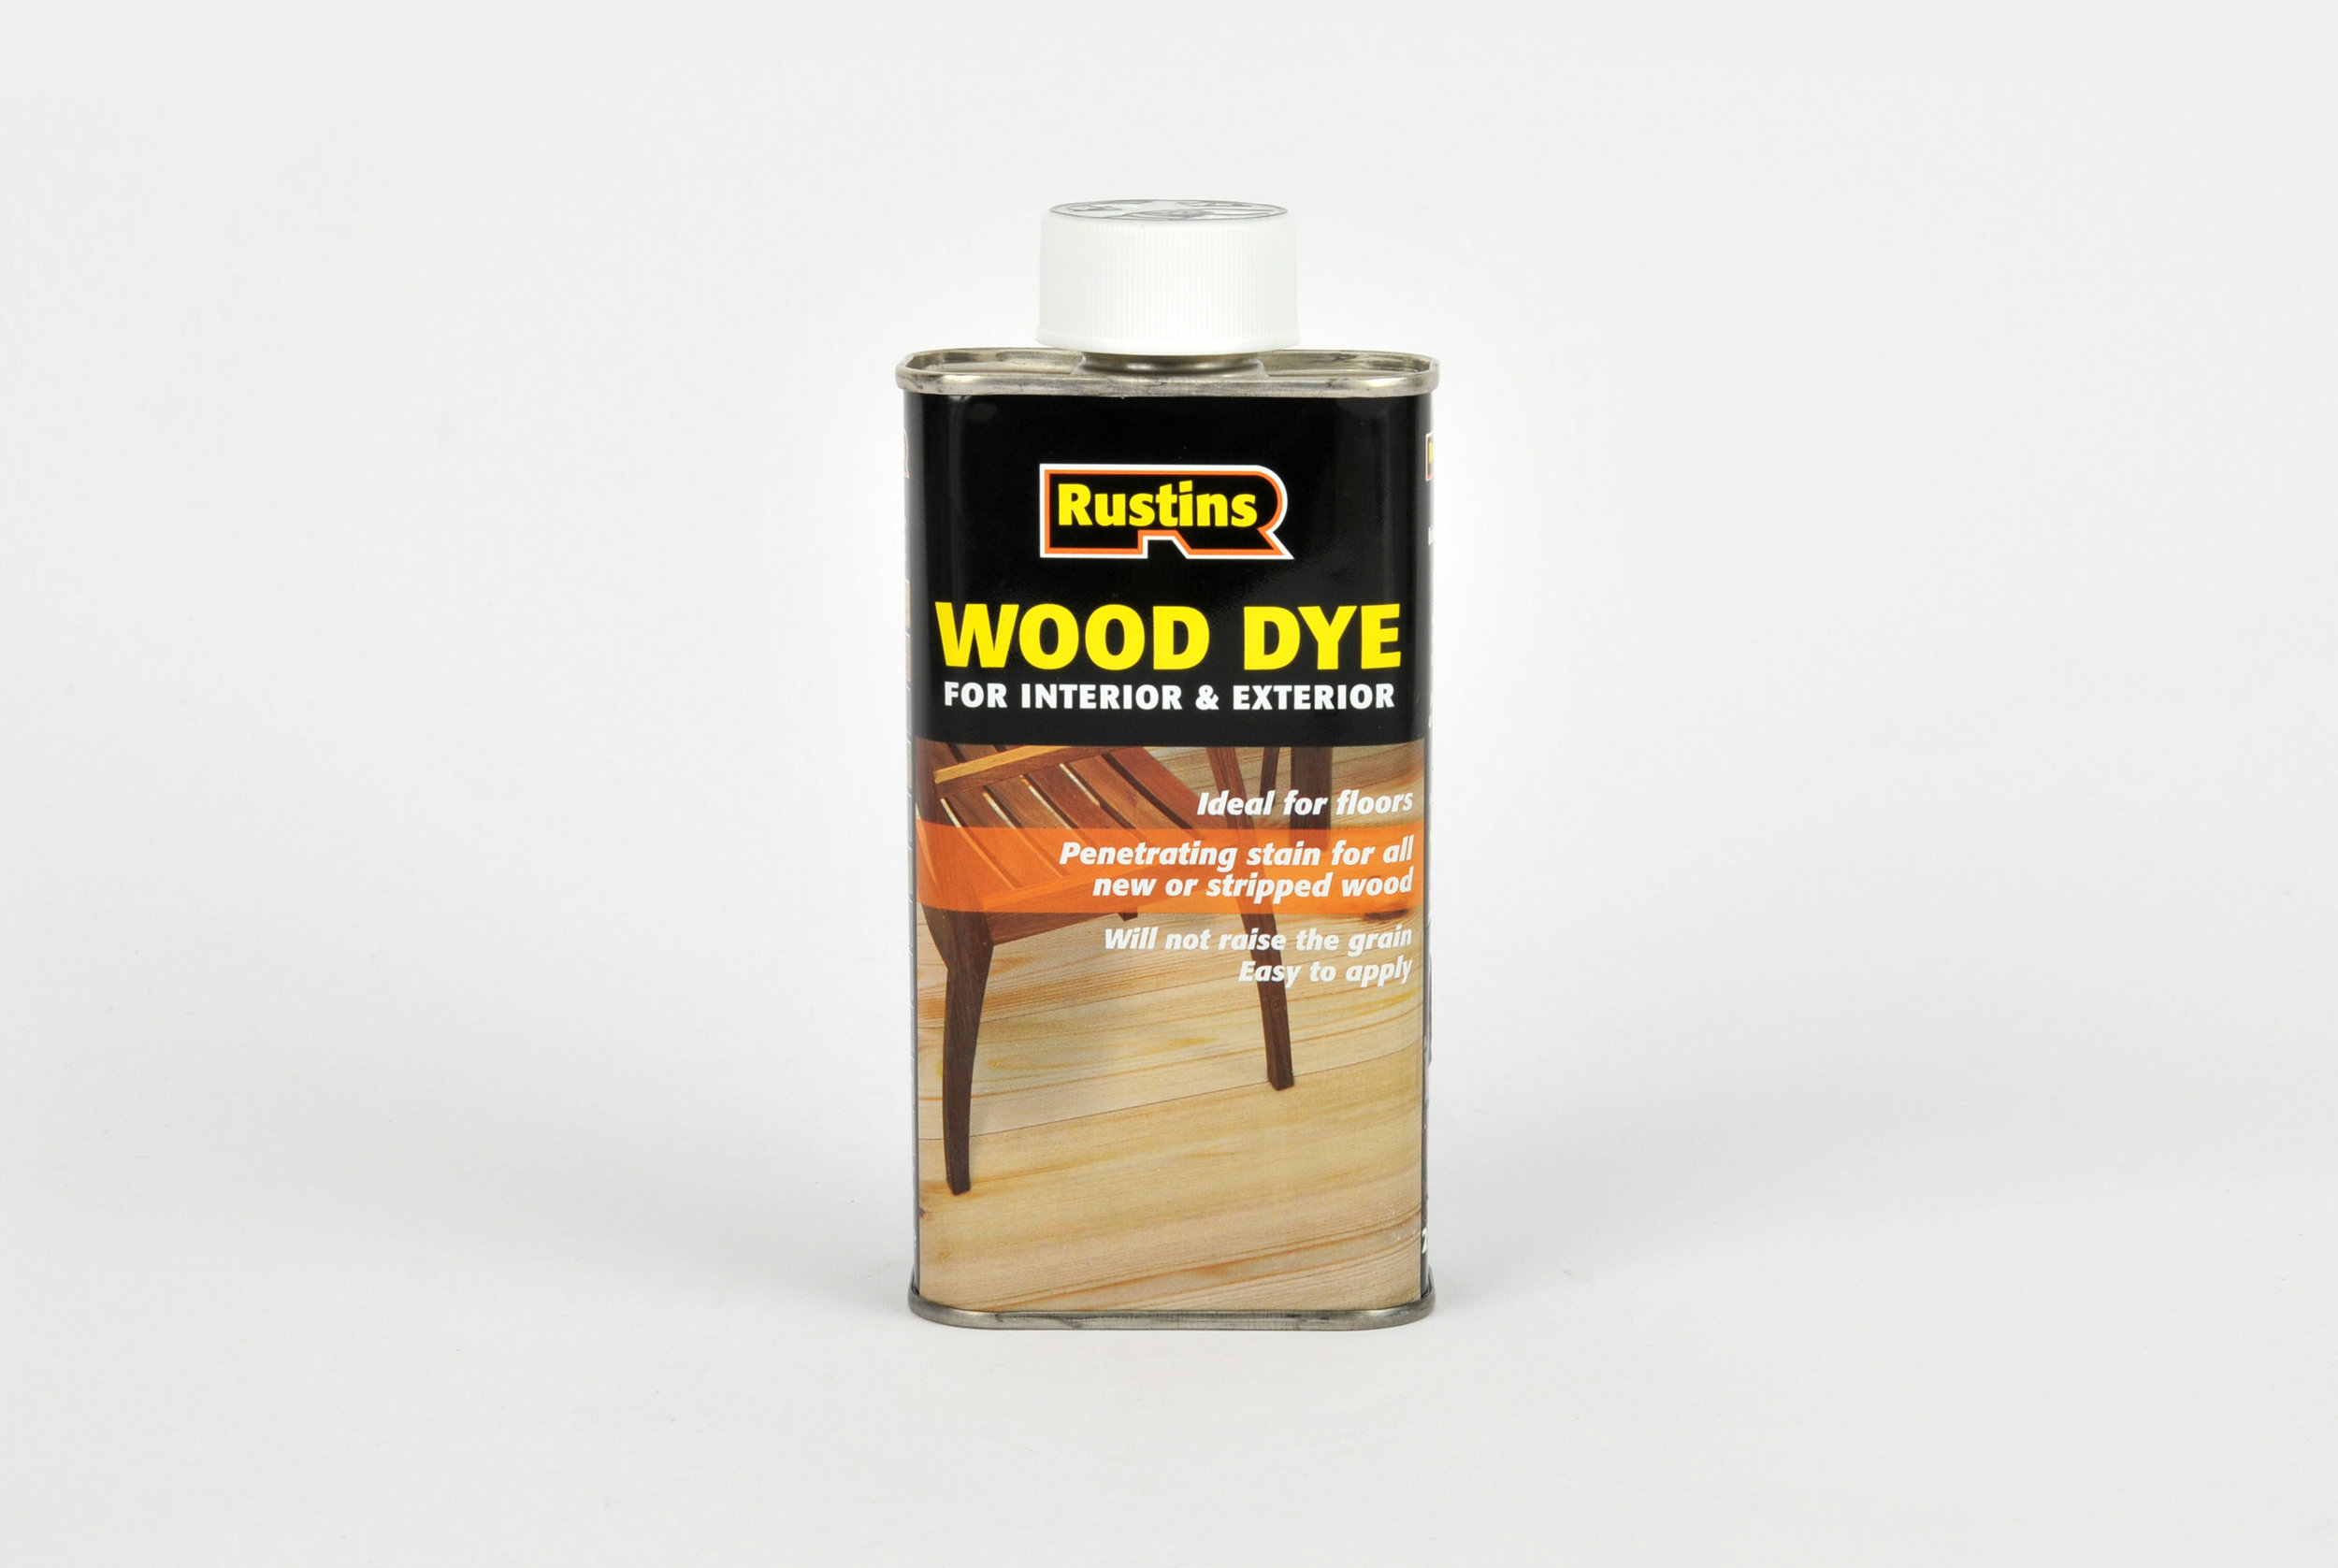 Rustins Wood Dye - Restorate